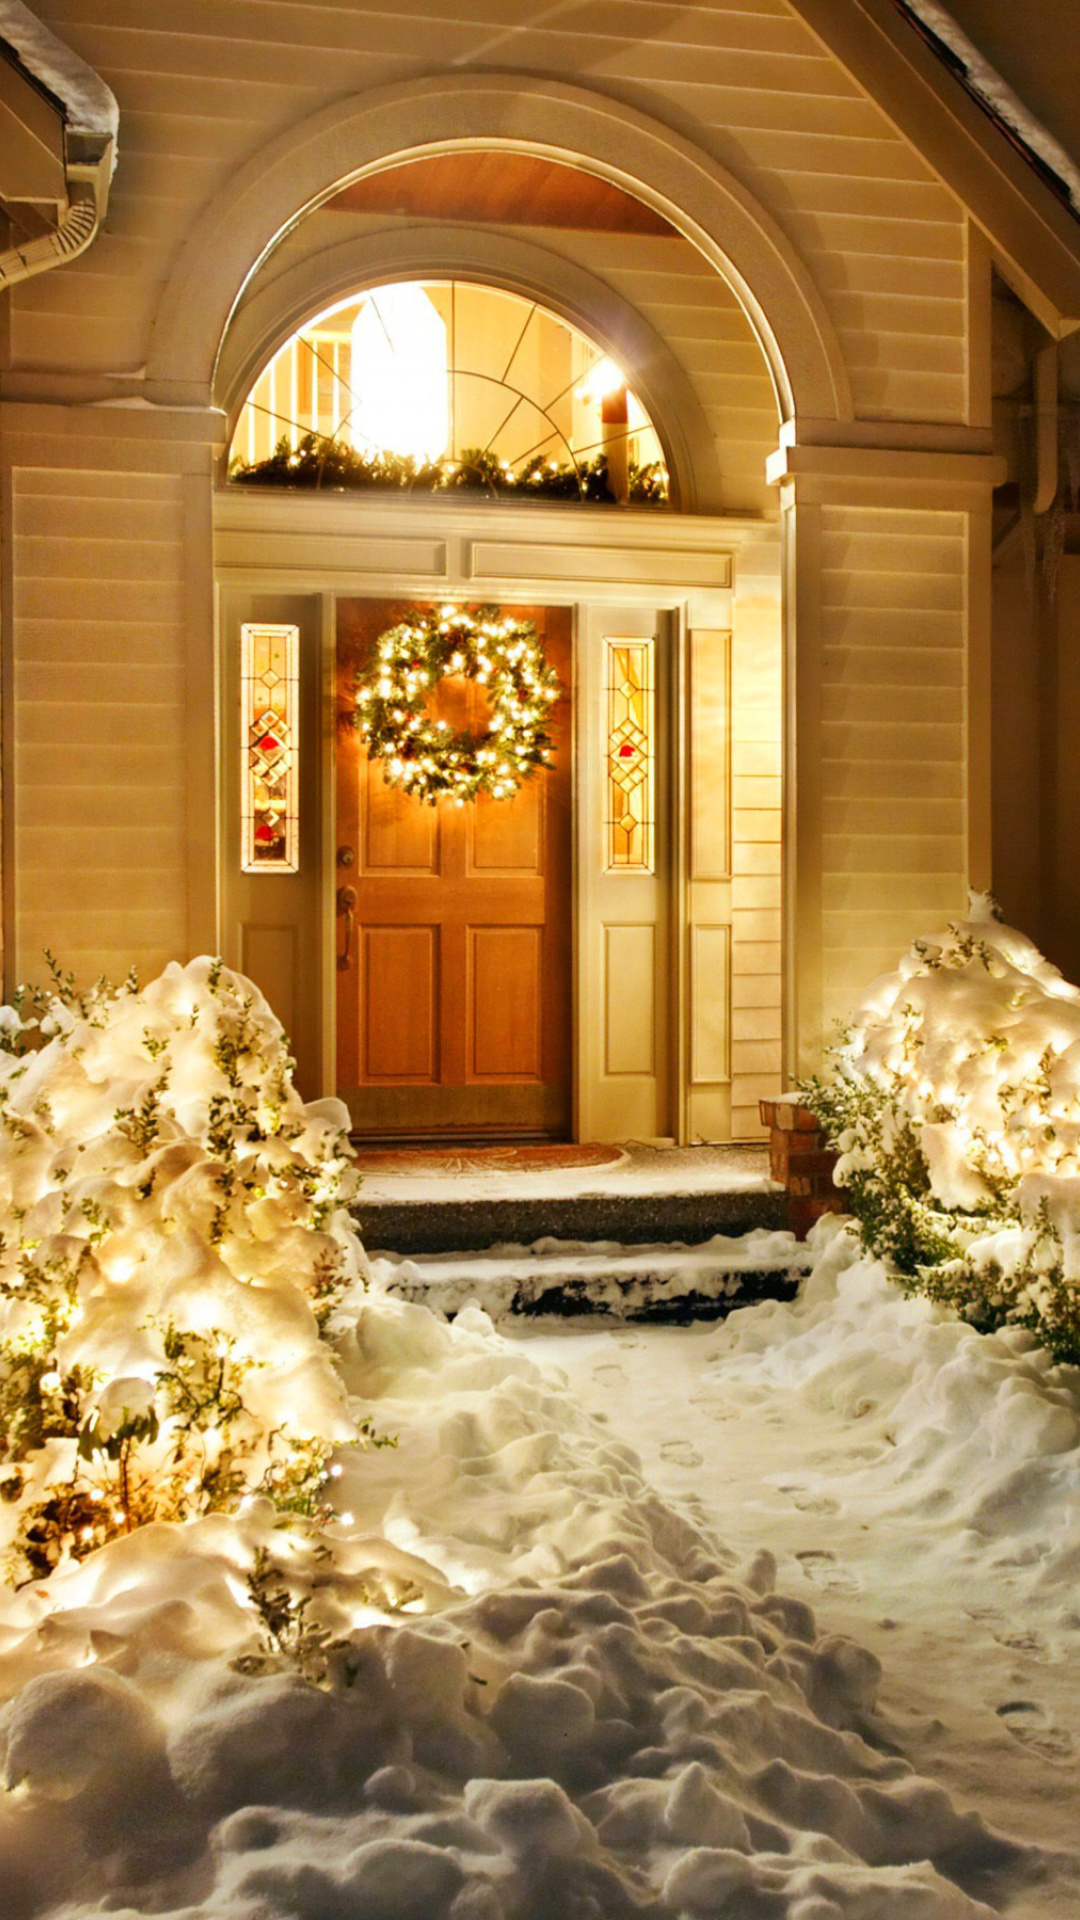 Das Christmas Outdoor Home Decor Idea Wallpaper 1080x1920